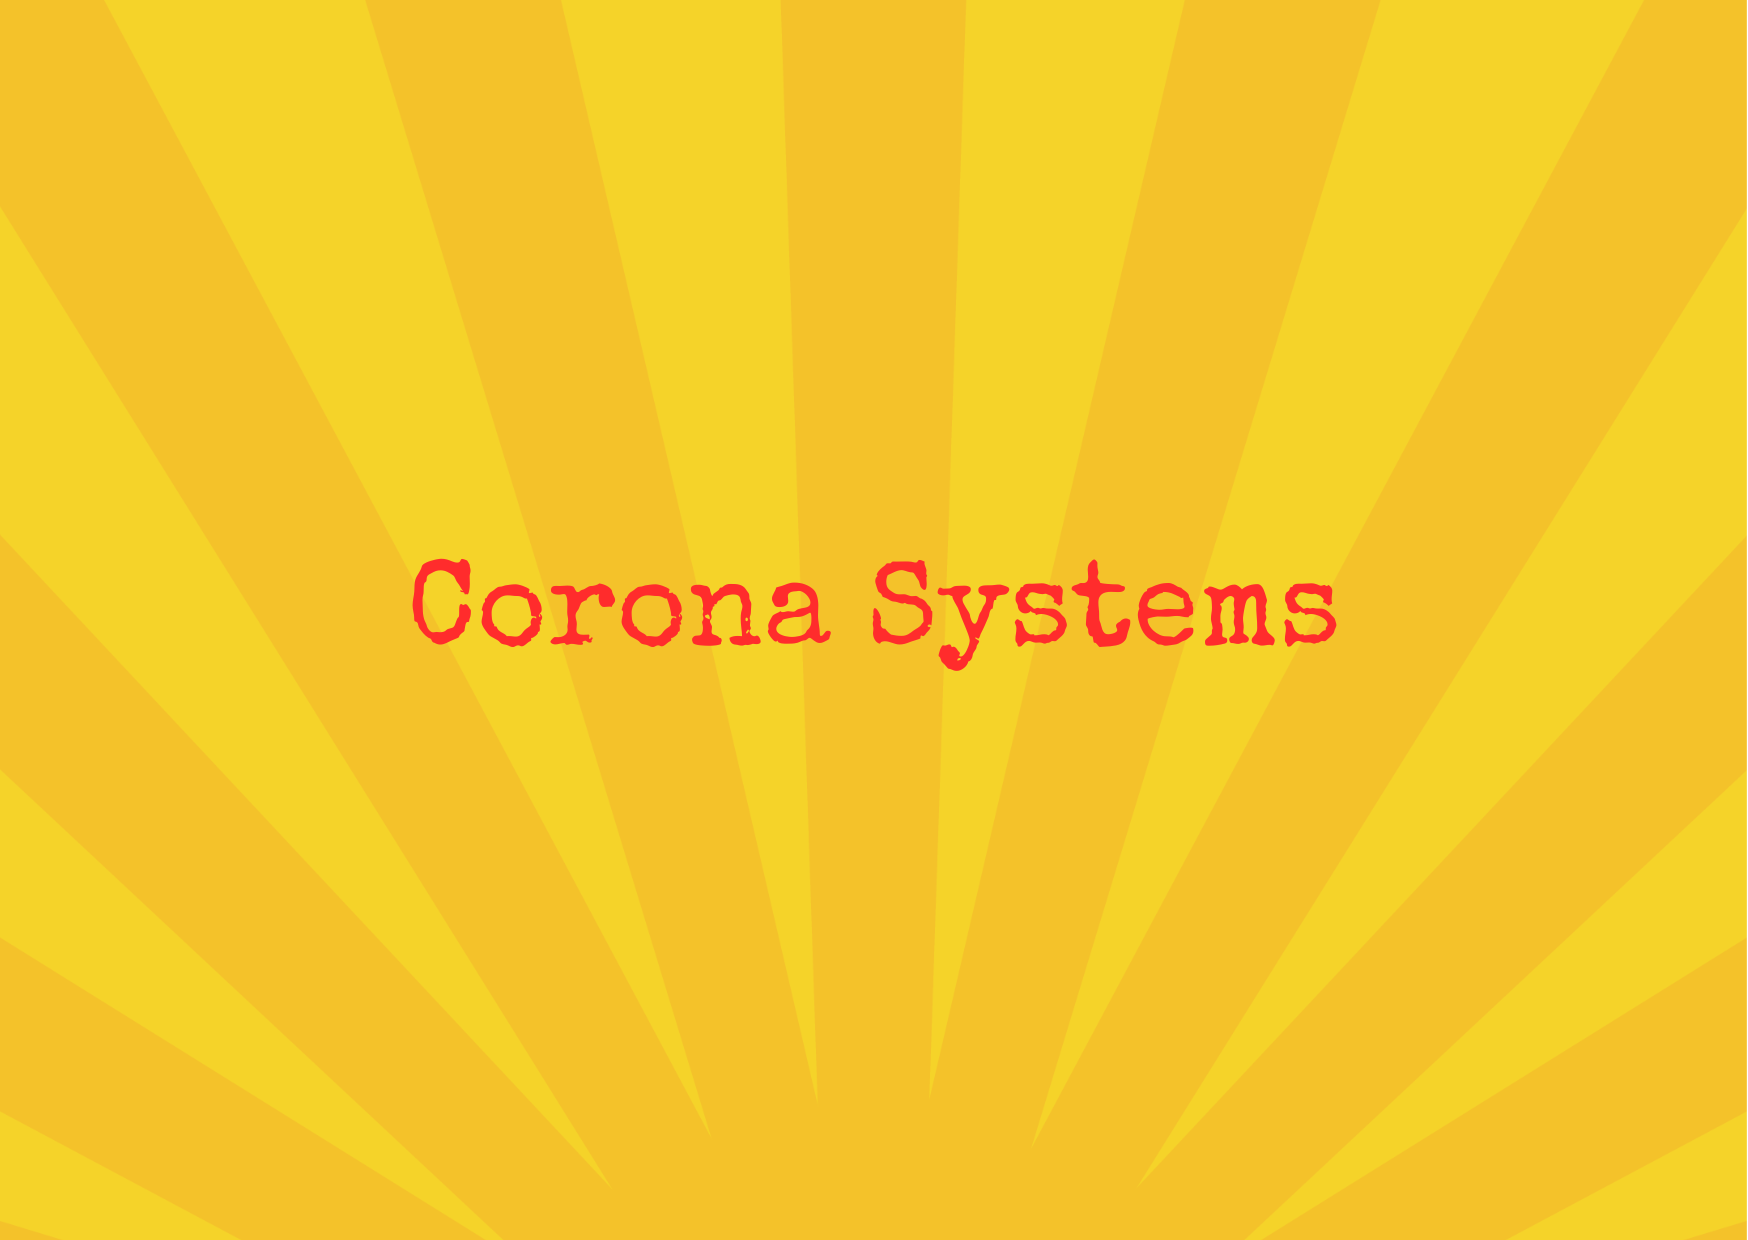  Corona Systems 